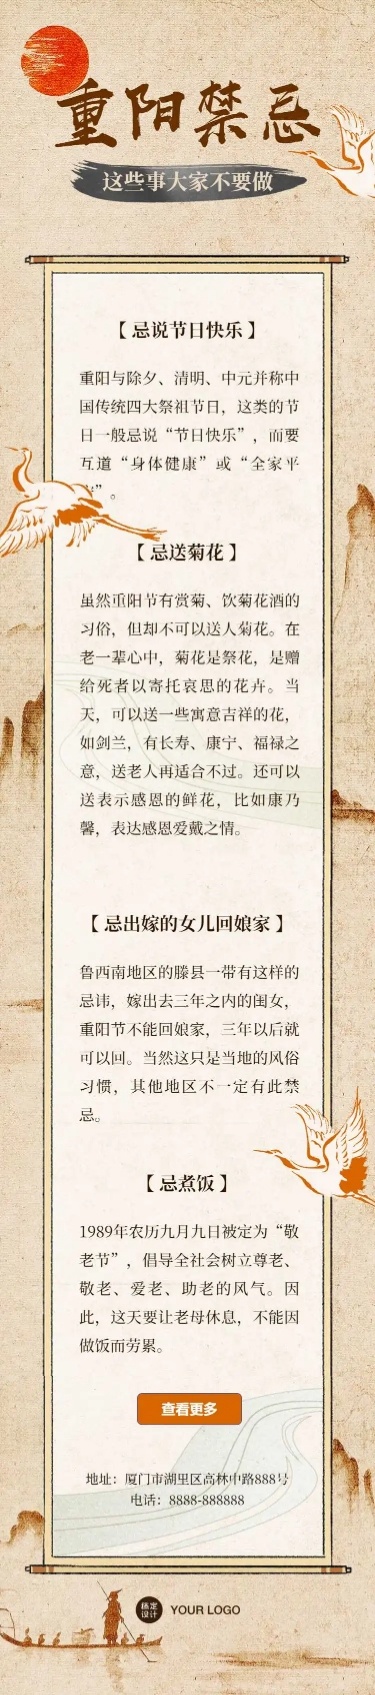 H5长页国风重阳节传统习俗禁忌科普